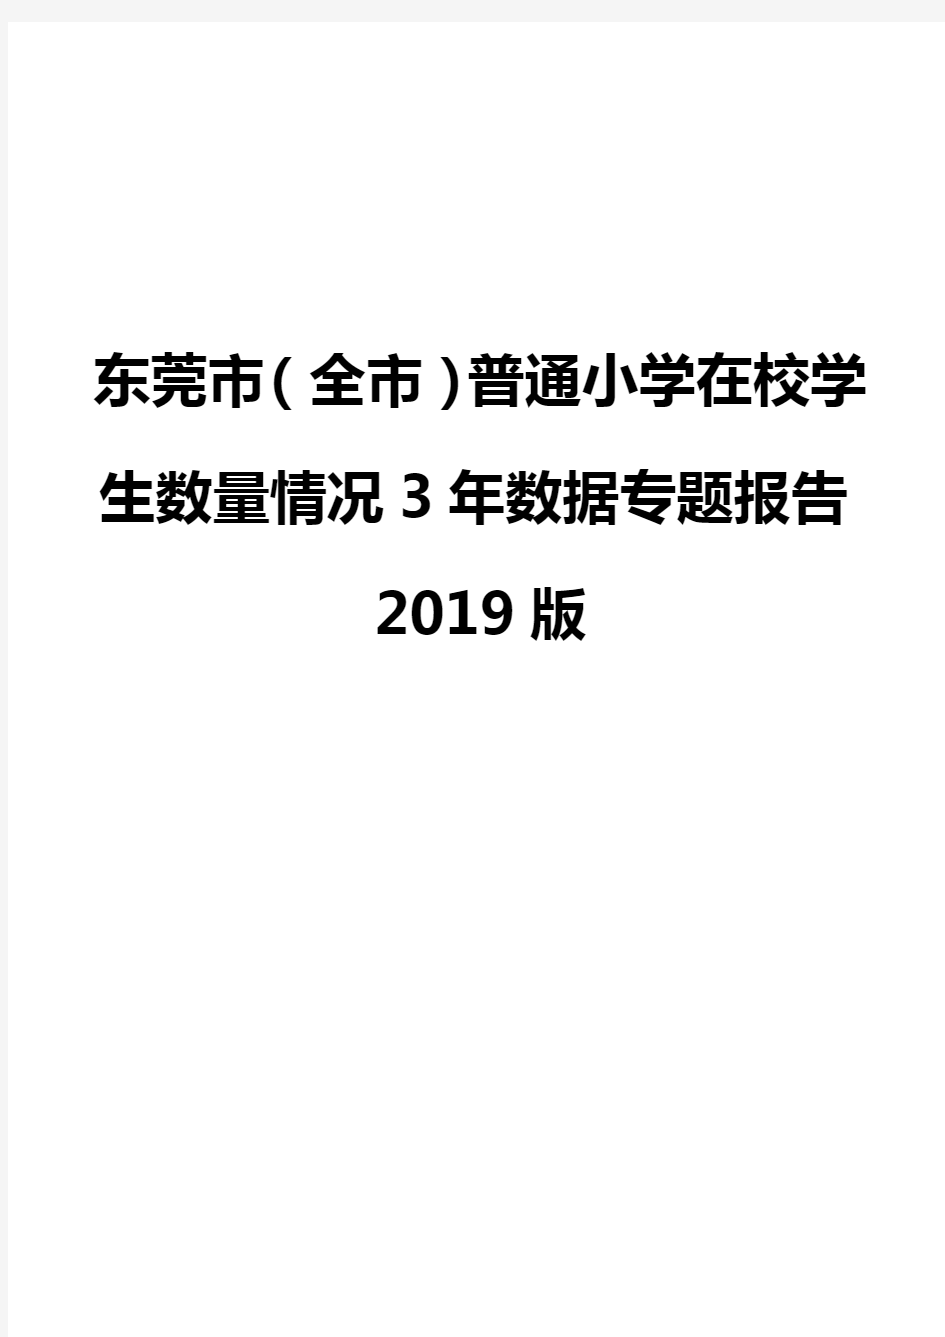 东莞市(全市)普通小学在校学生数量情况3年数据专题报告2019版